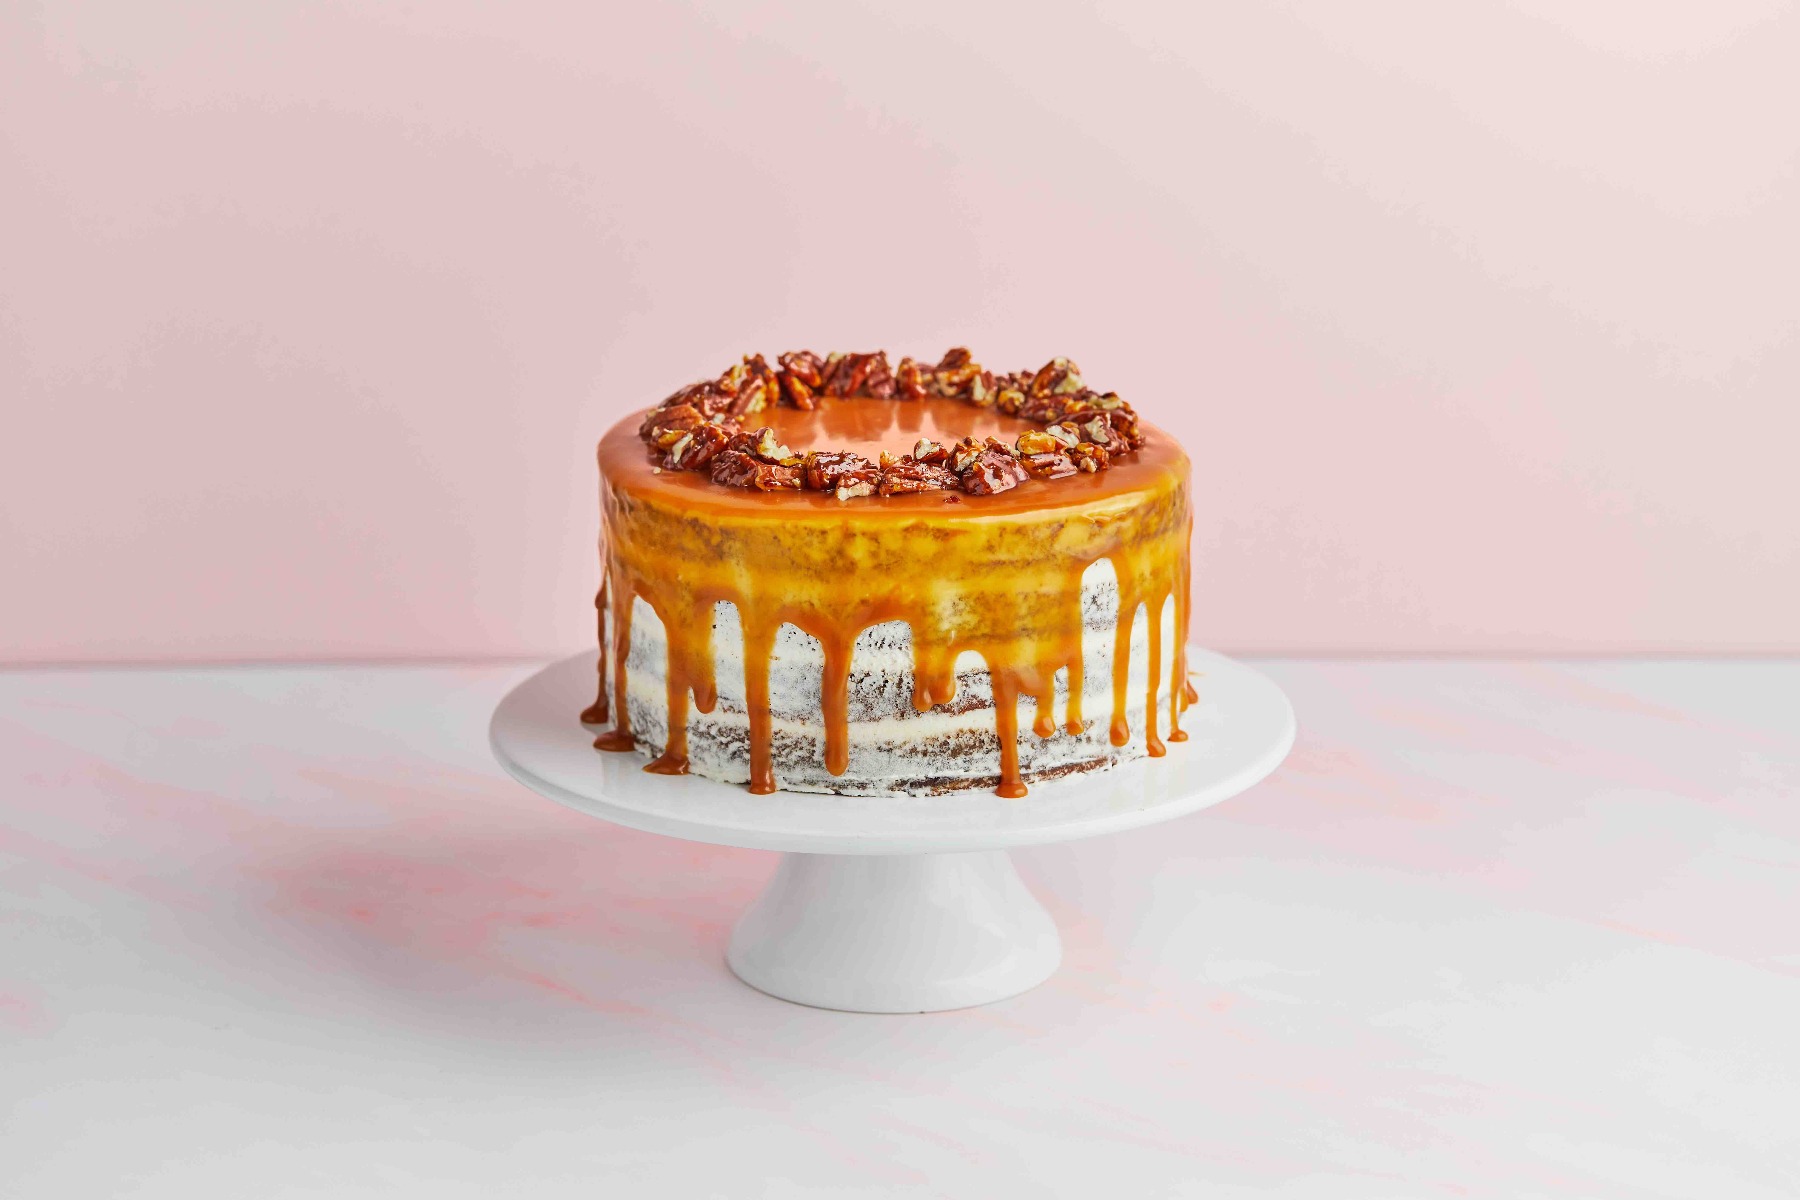 Dates Cake | Date Cake Recipe